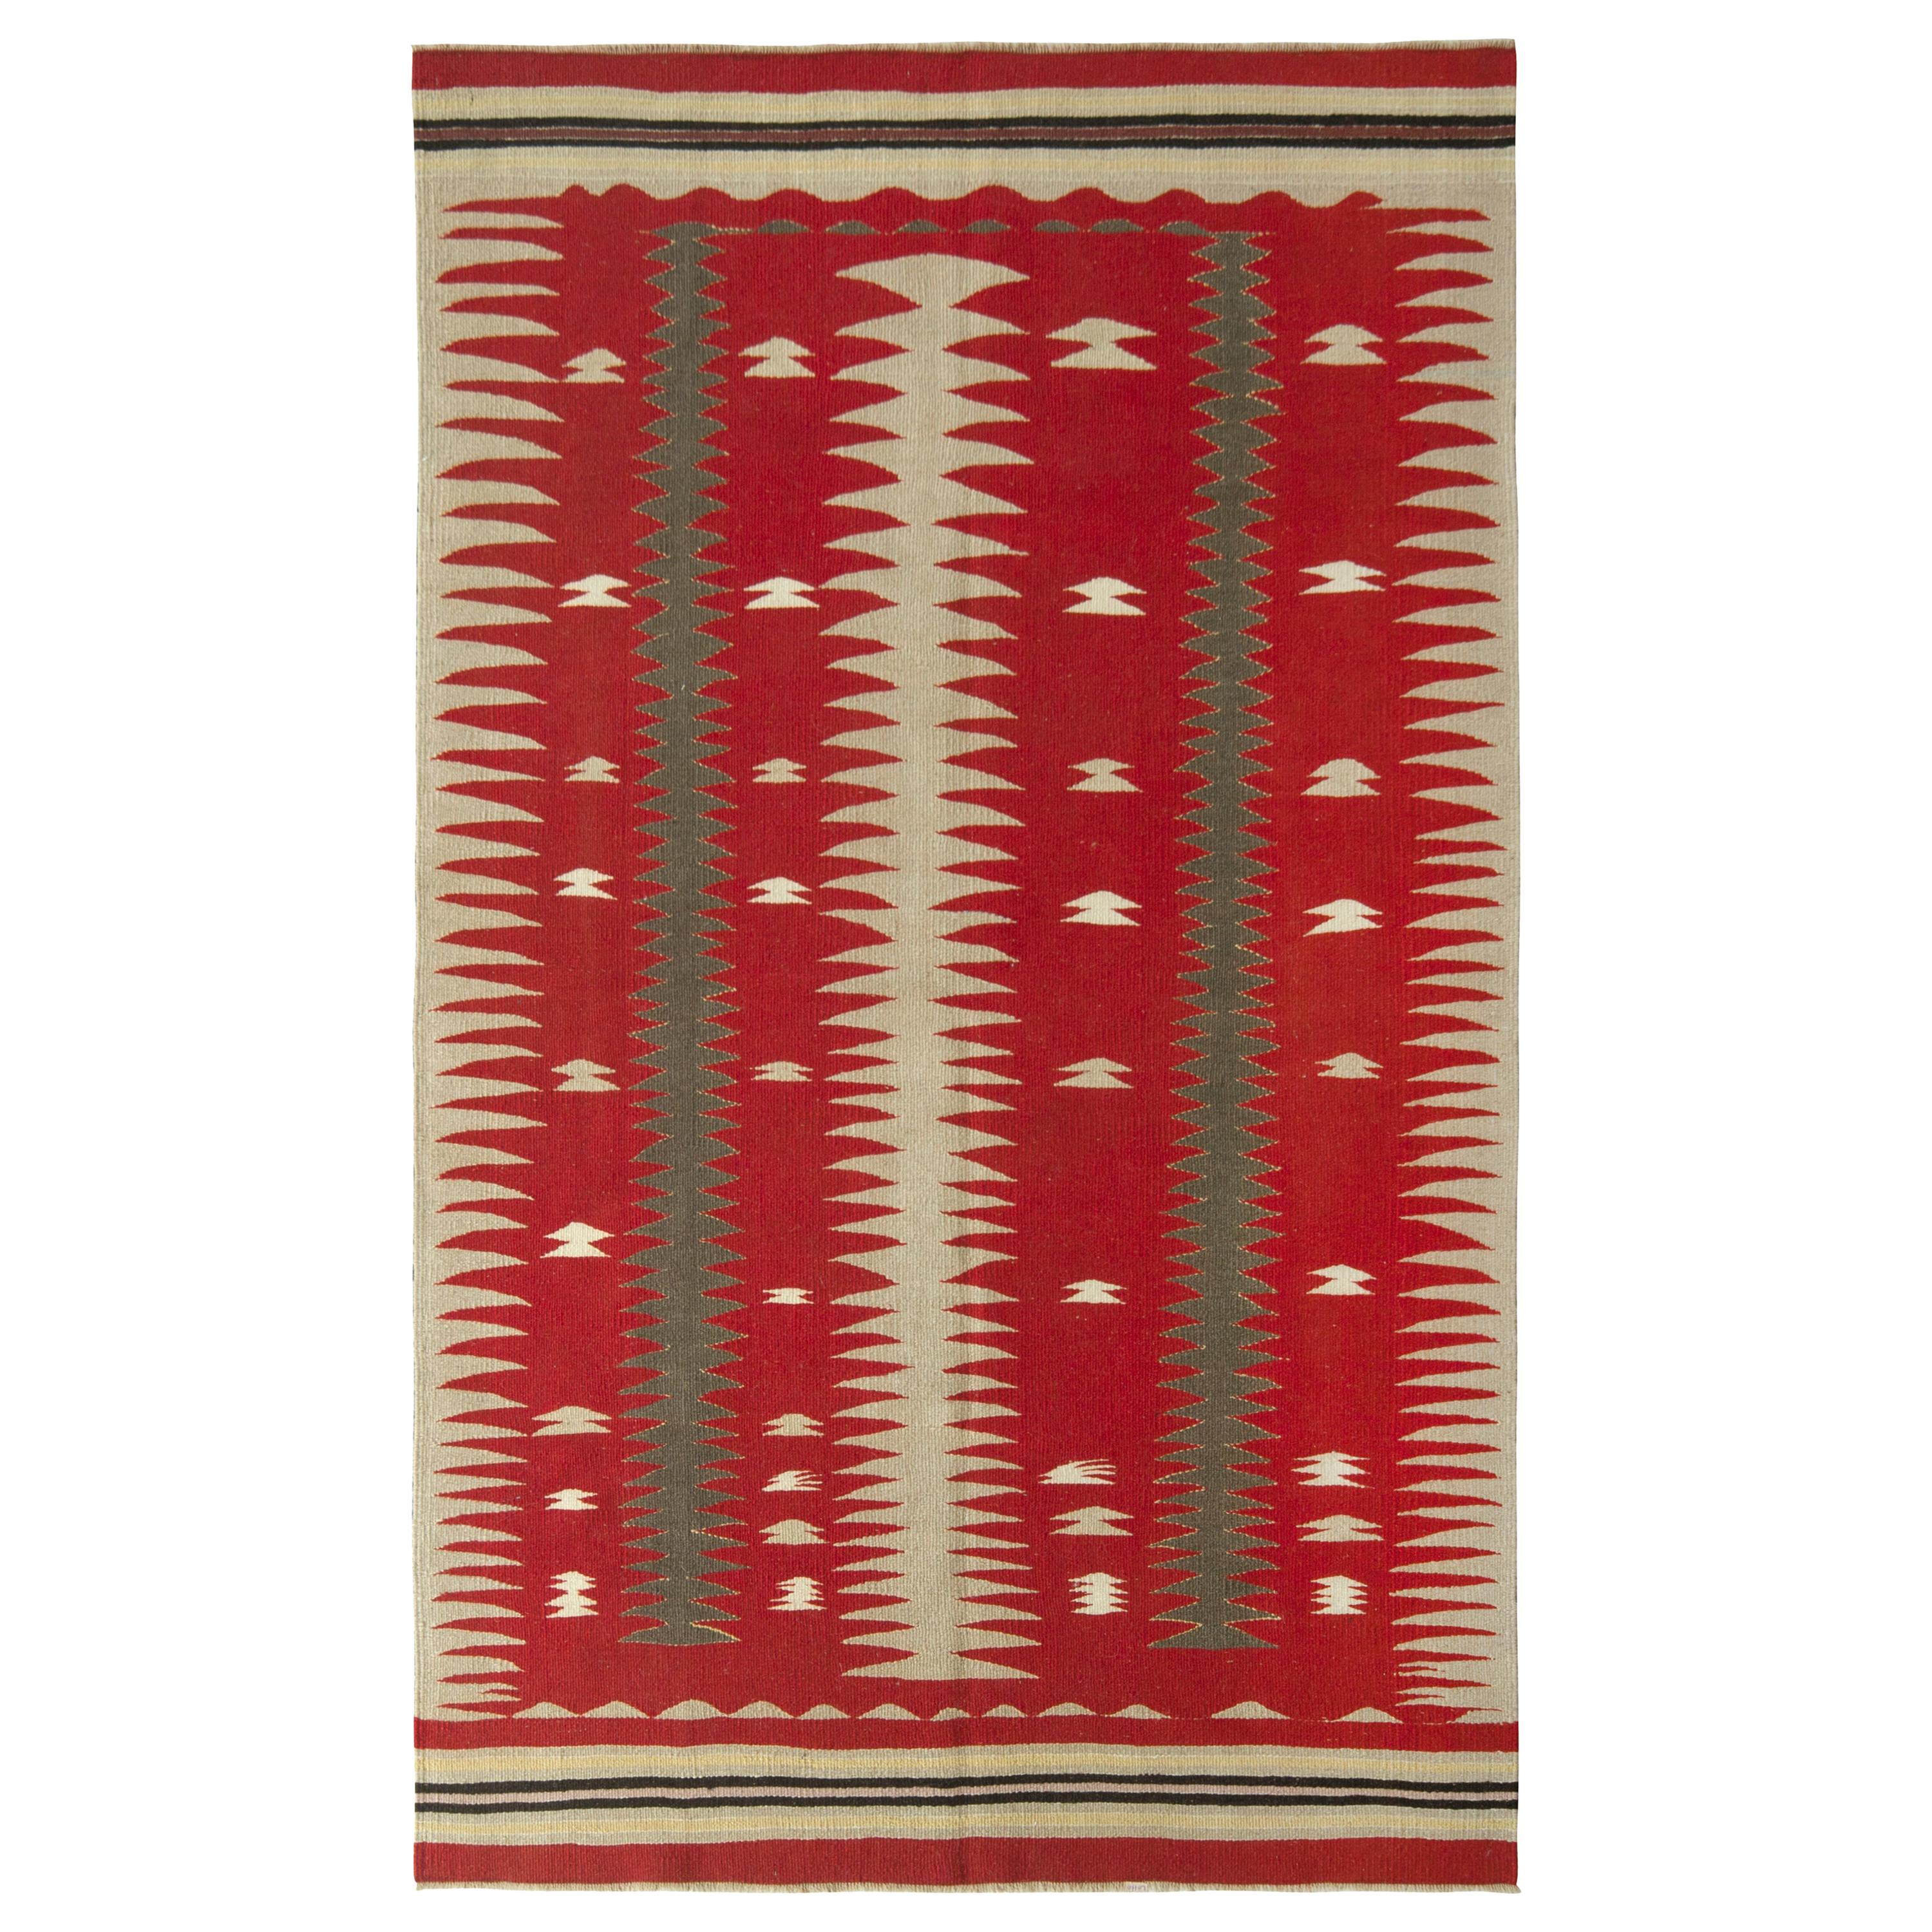 1950s Midcentury Vintage Kilim Rug Beige Red Tribal Pattern by Rug & Kilim